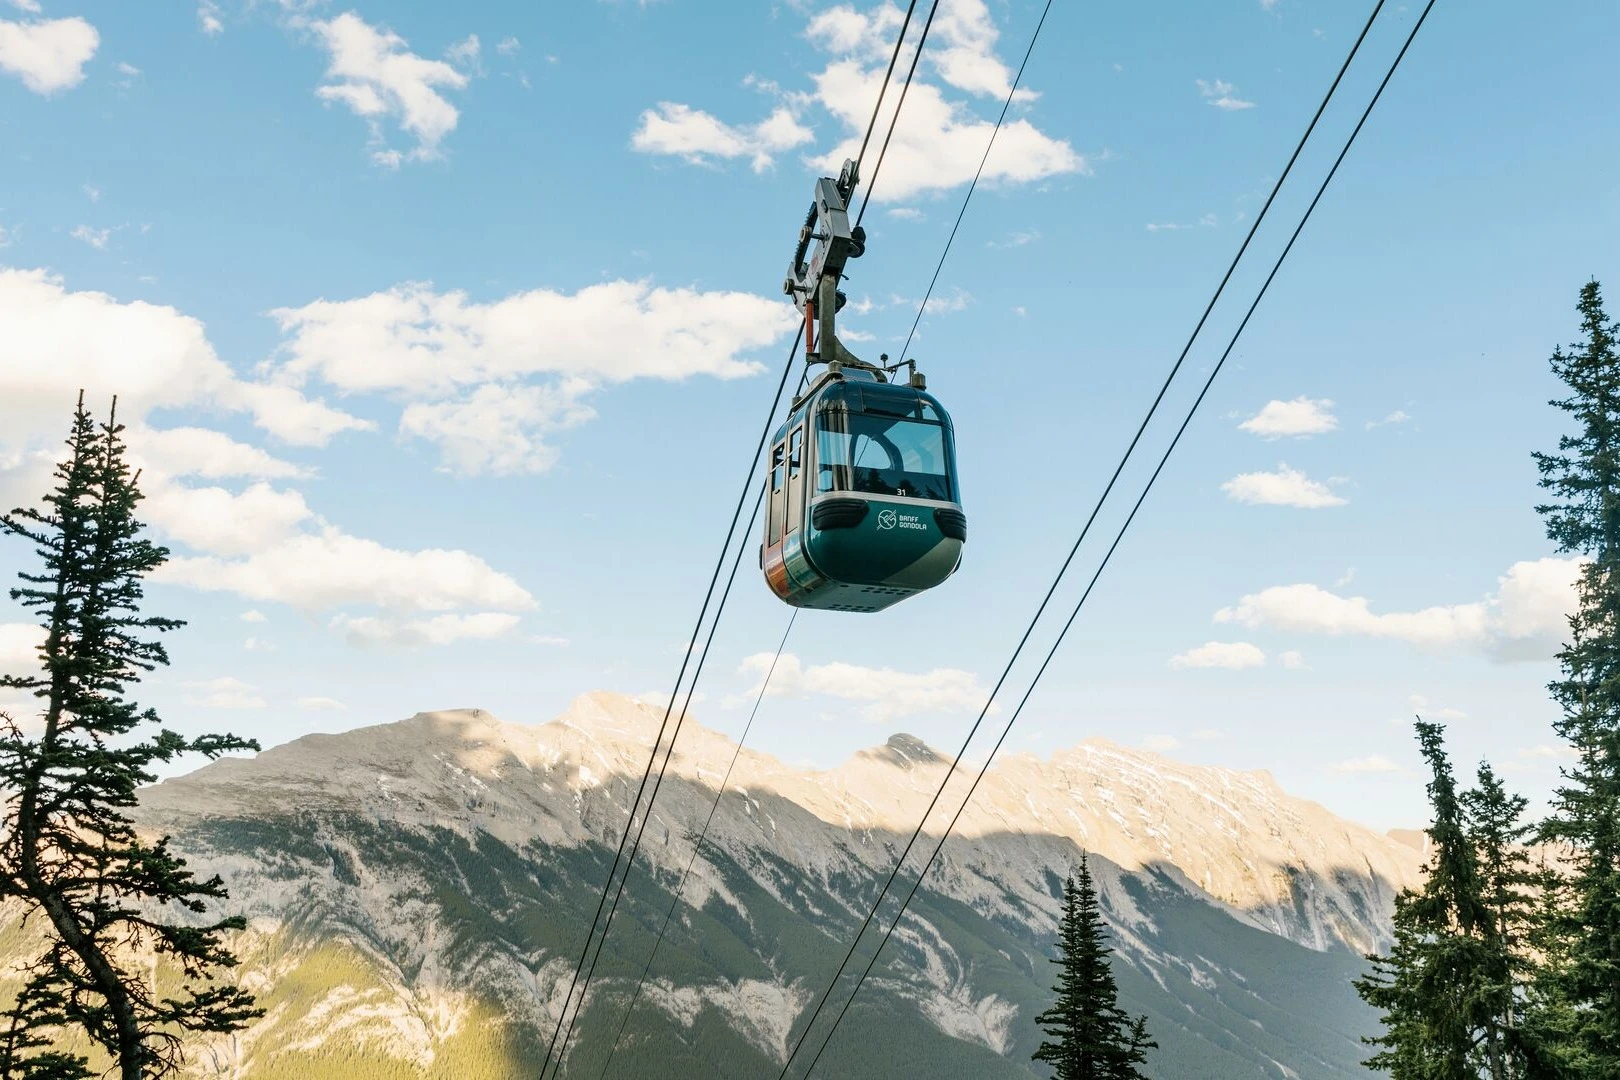 Banff gondola ride to a mountaintop.